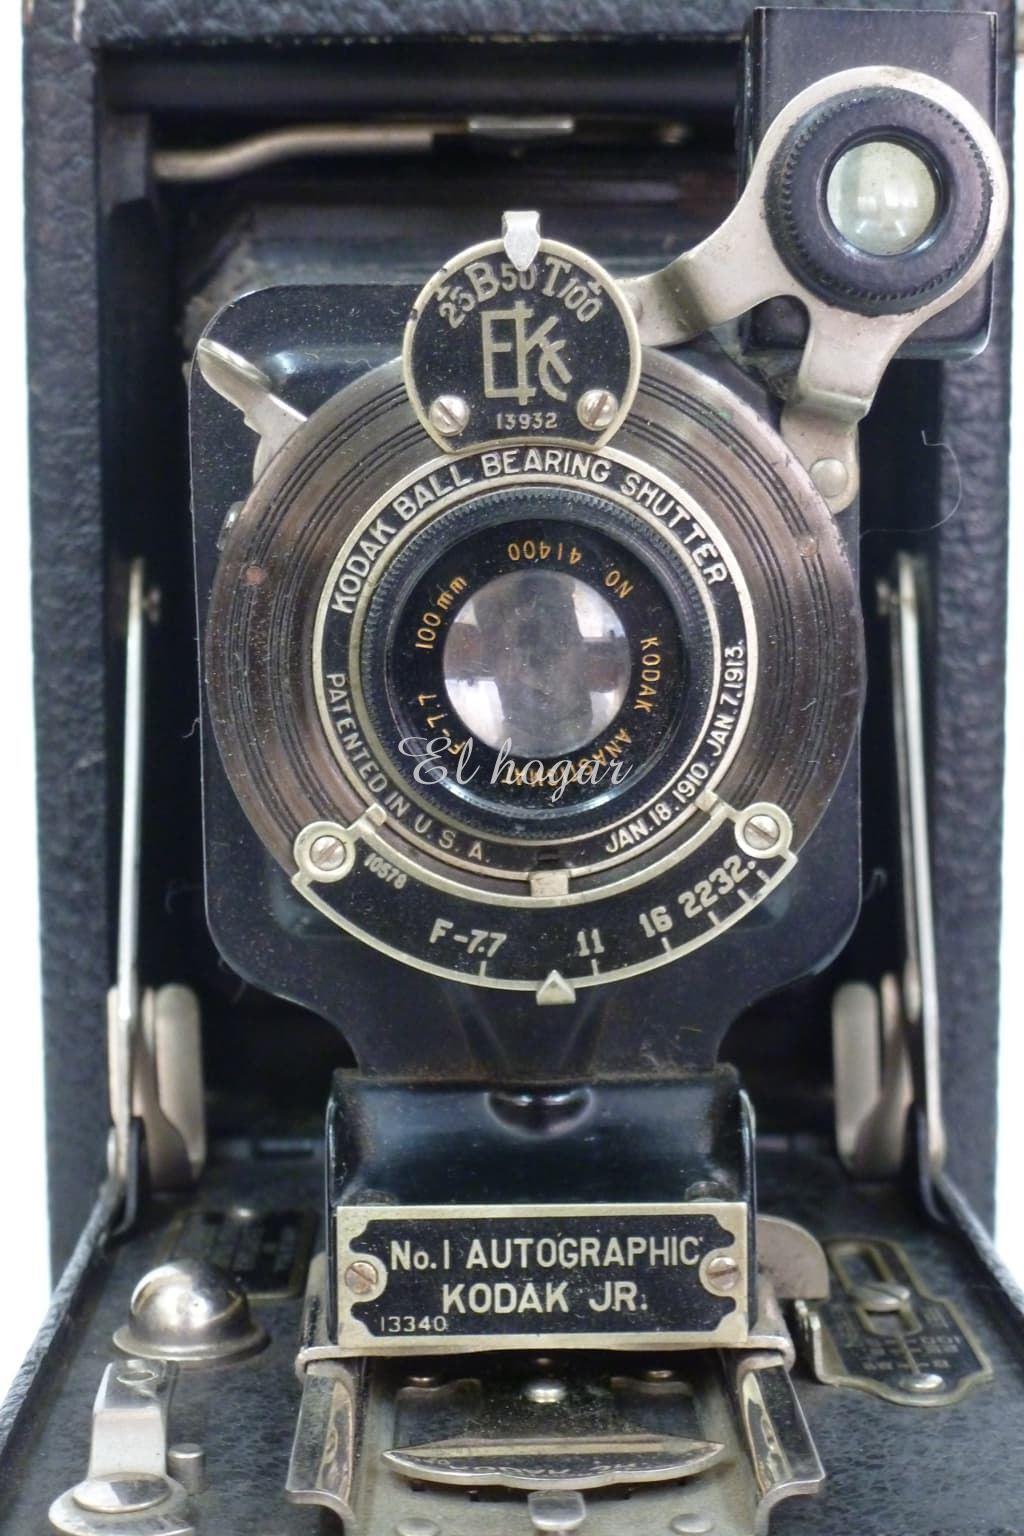 Camara Kodak Jr. Autographic Nº 1, con libro de instrucciones 1925 - Imagen 6